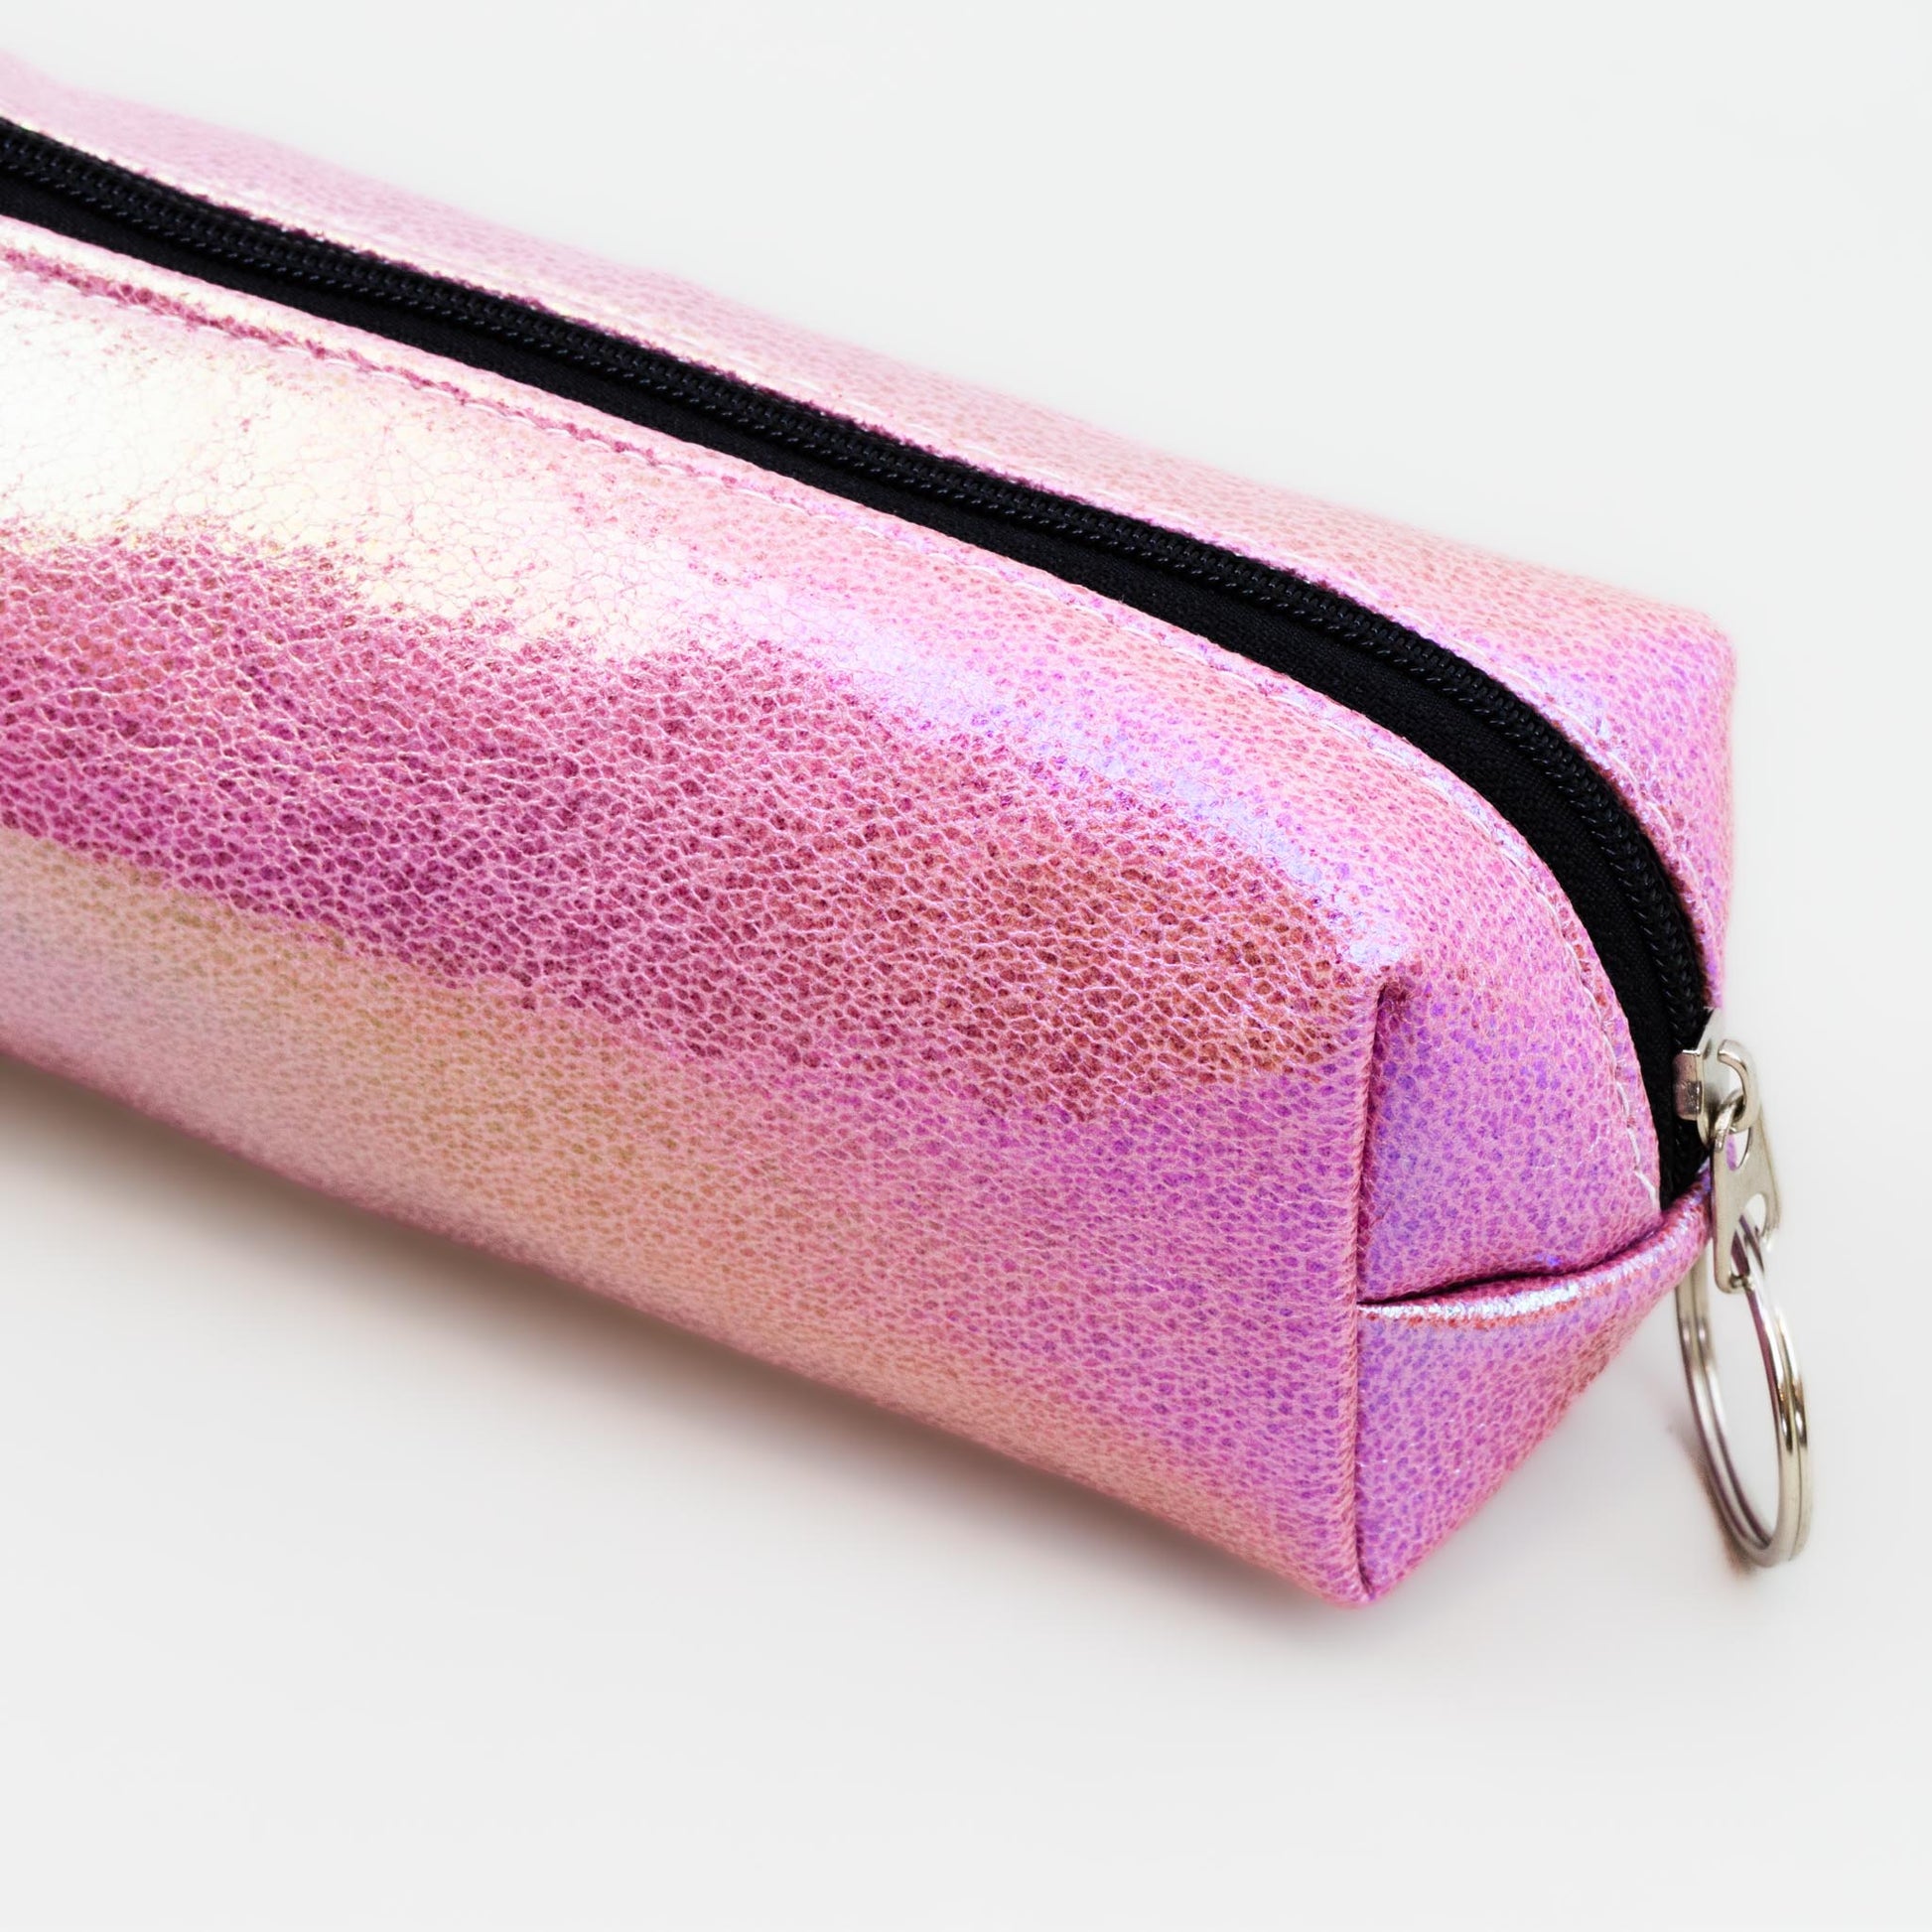 Geantă cosmetice mică cu textură lucioasă - Roz